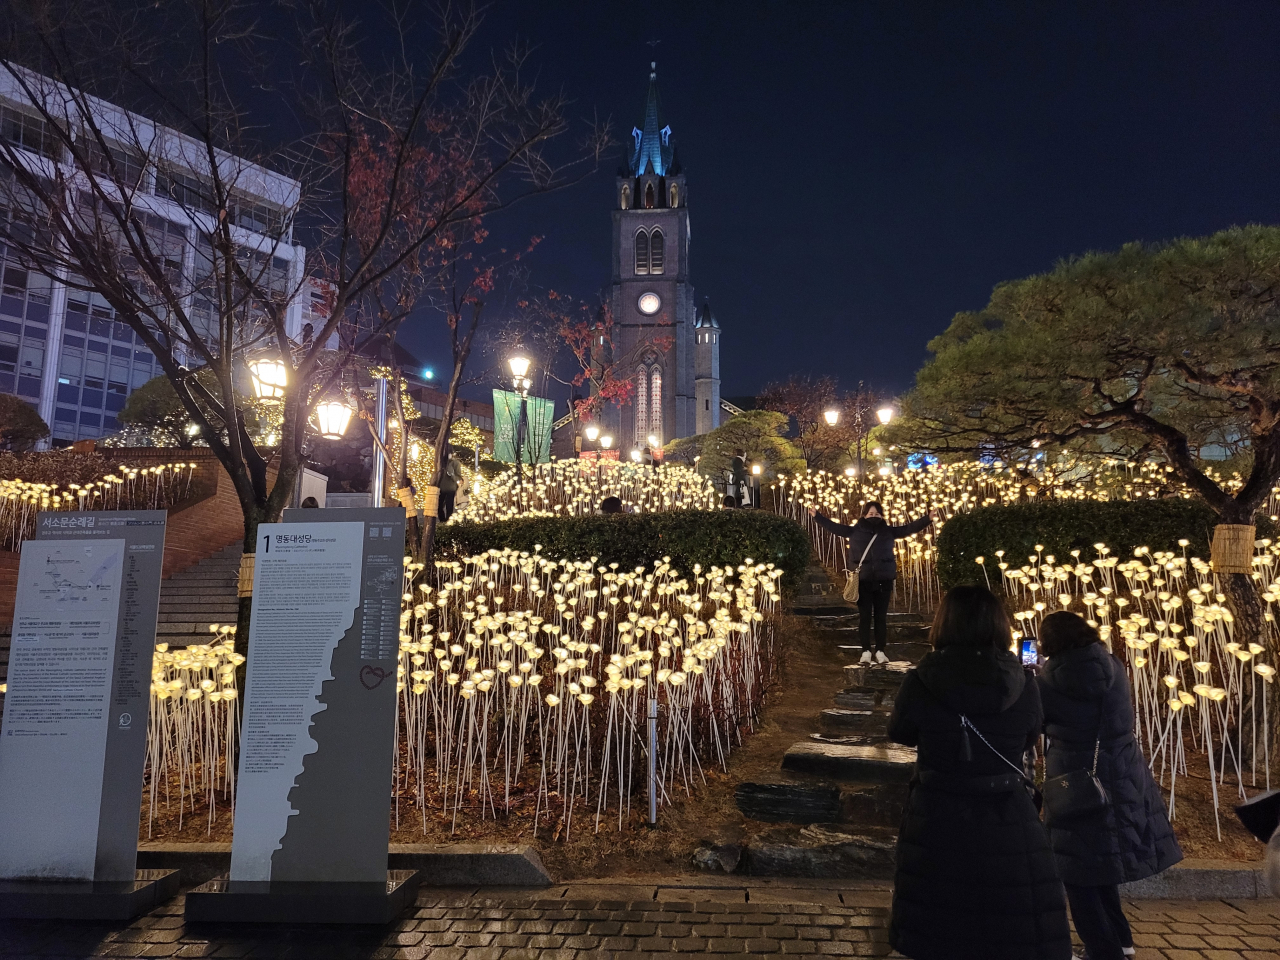 24일 서울 명동성당에서 성탄절을 맞아 전등으로 장식된 명동성당에서 관람객들이 사진을 찍고 있다.  (박유나 / 코리아헤럴드)